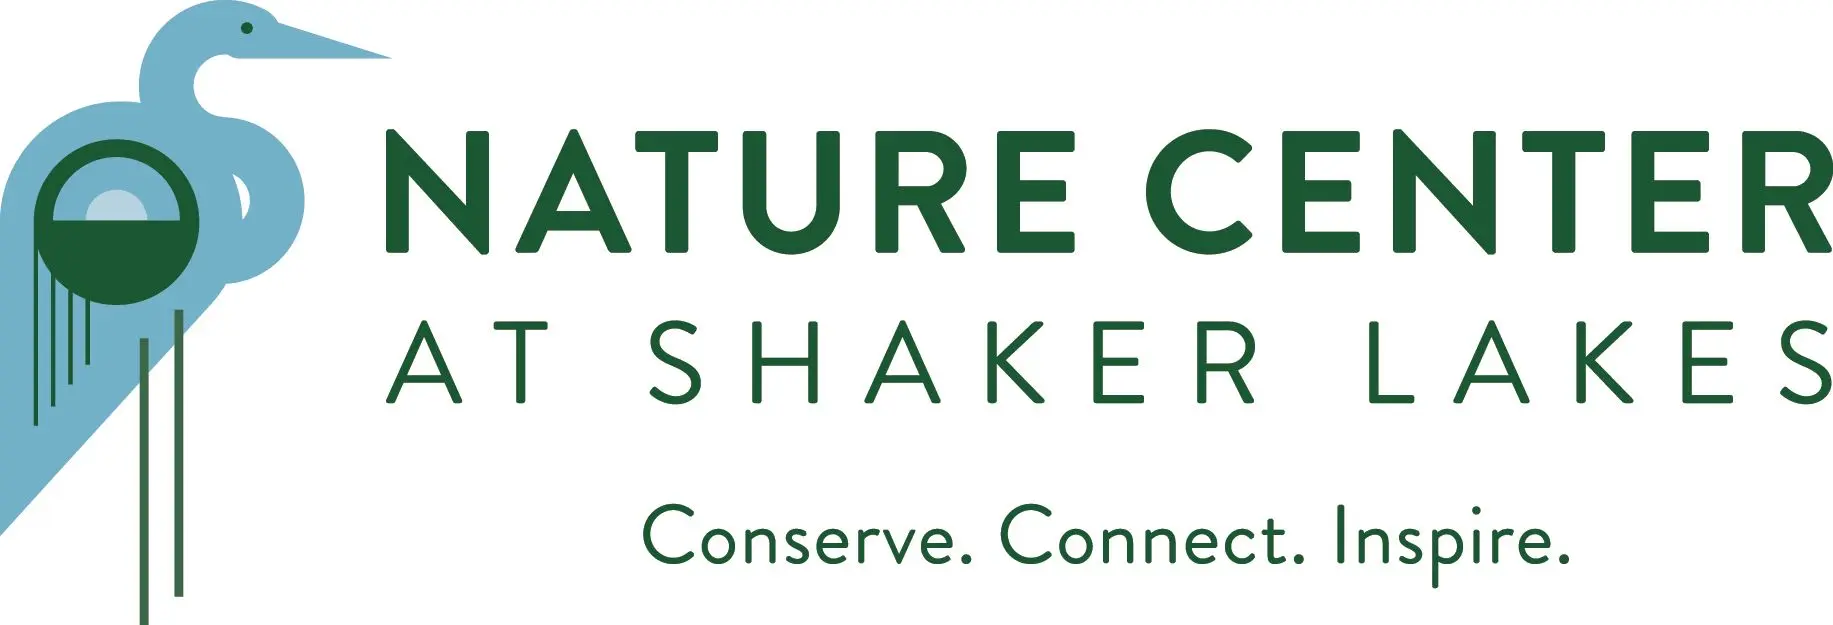 Nature Center at Shaker Lakes Logo